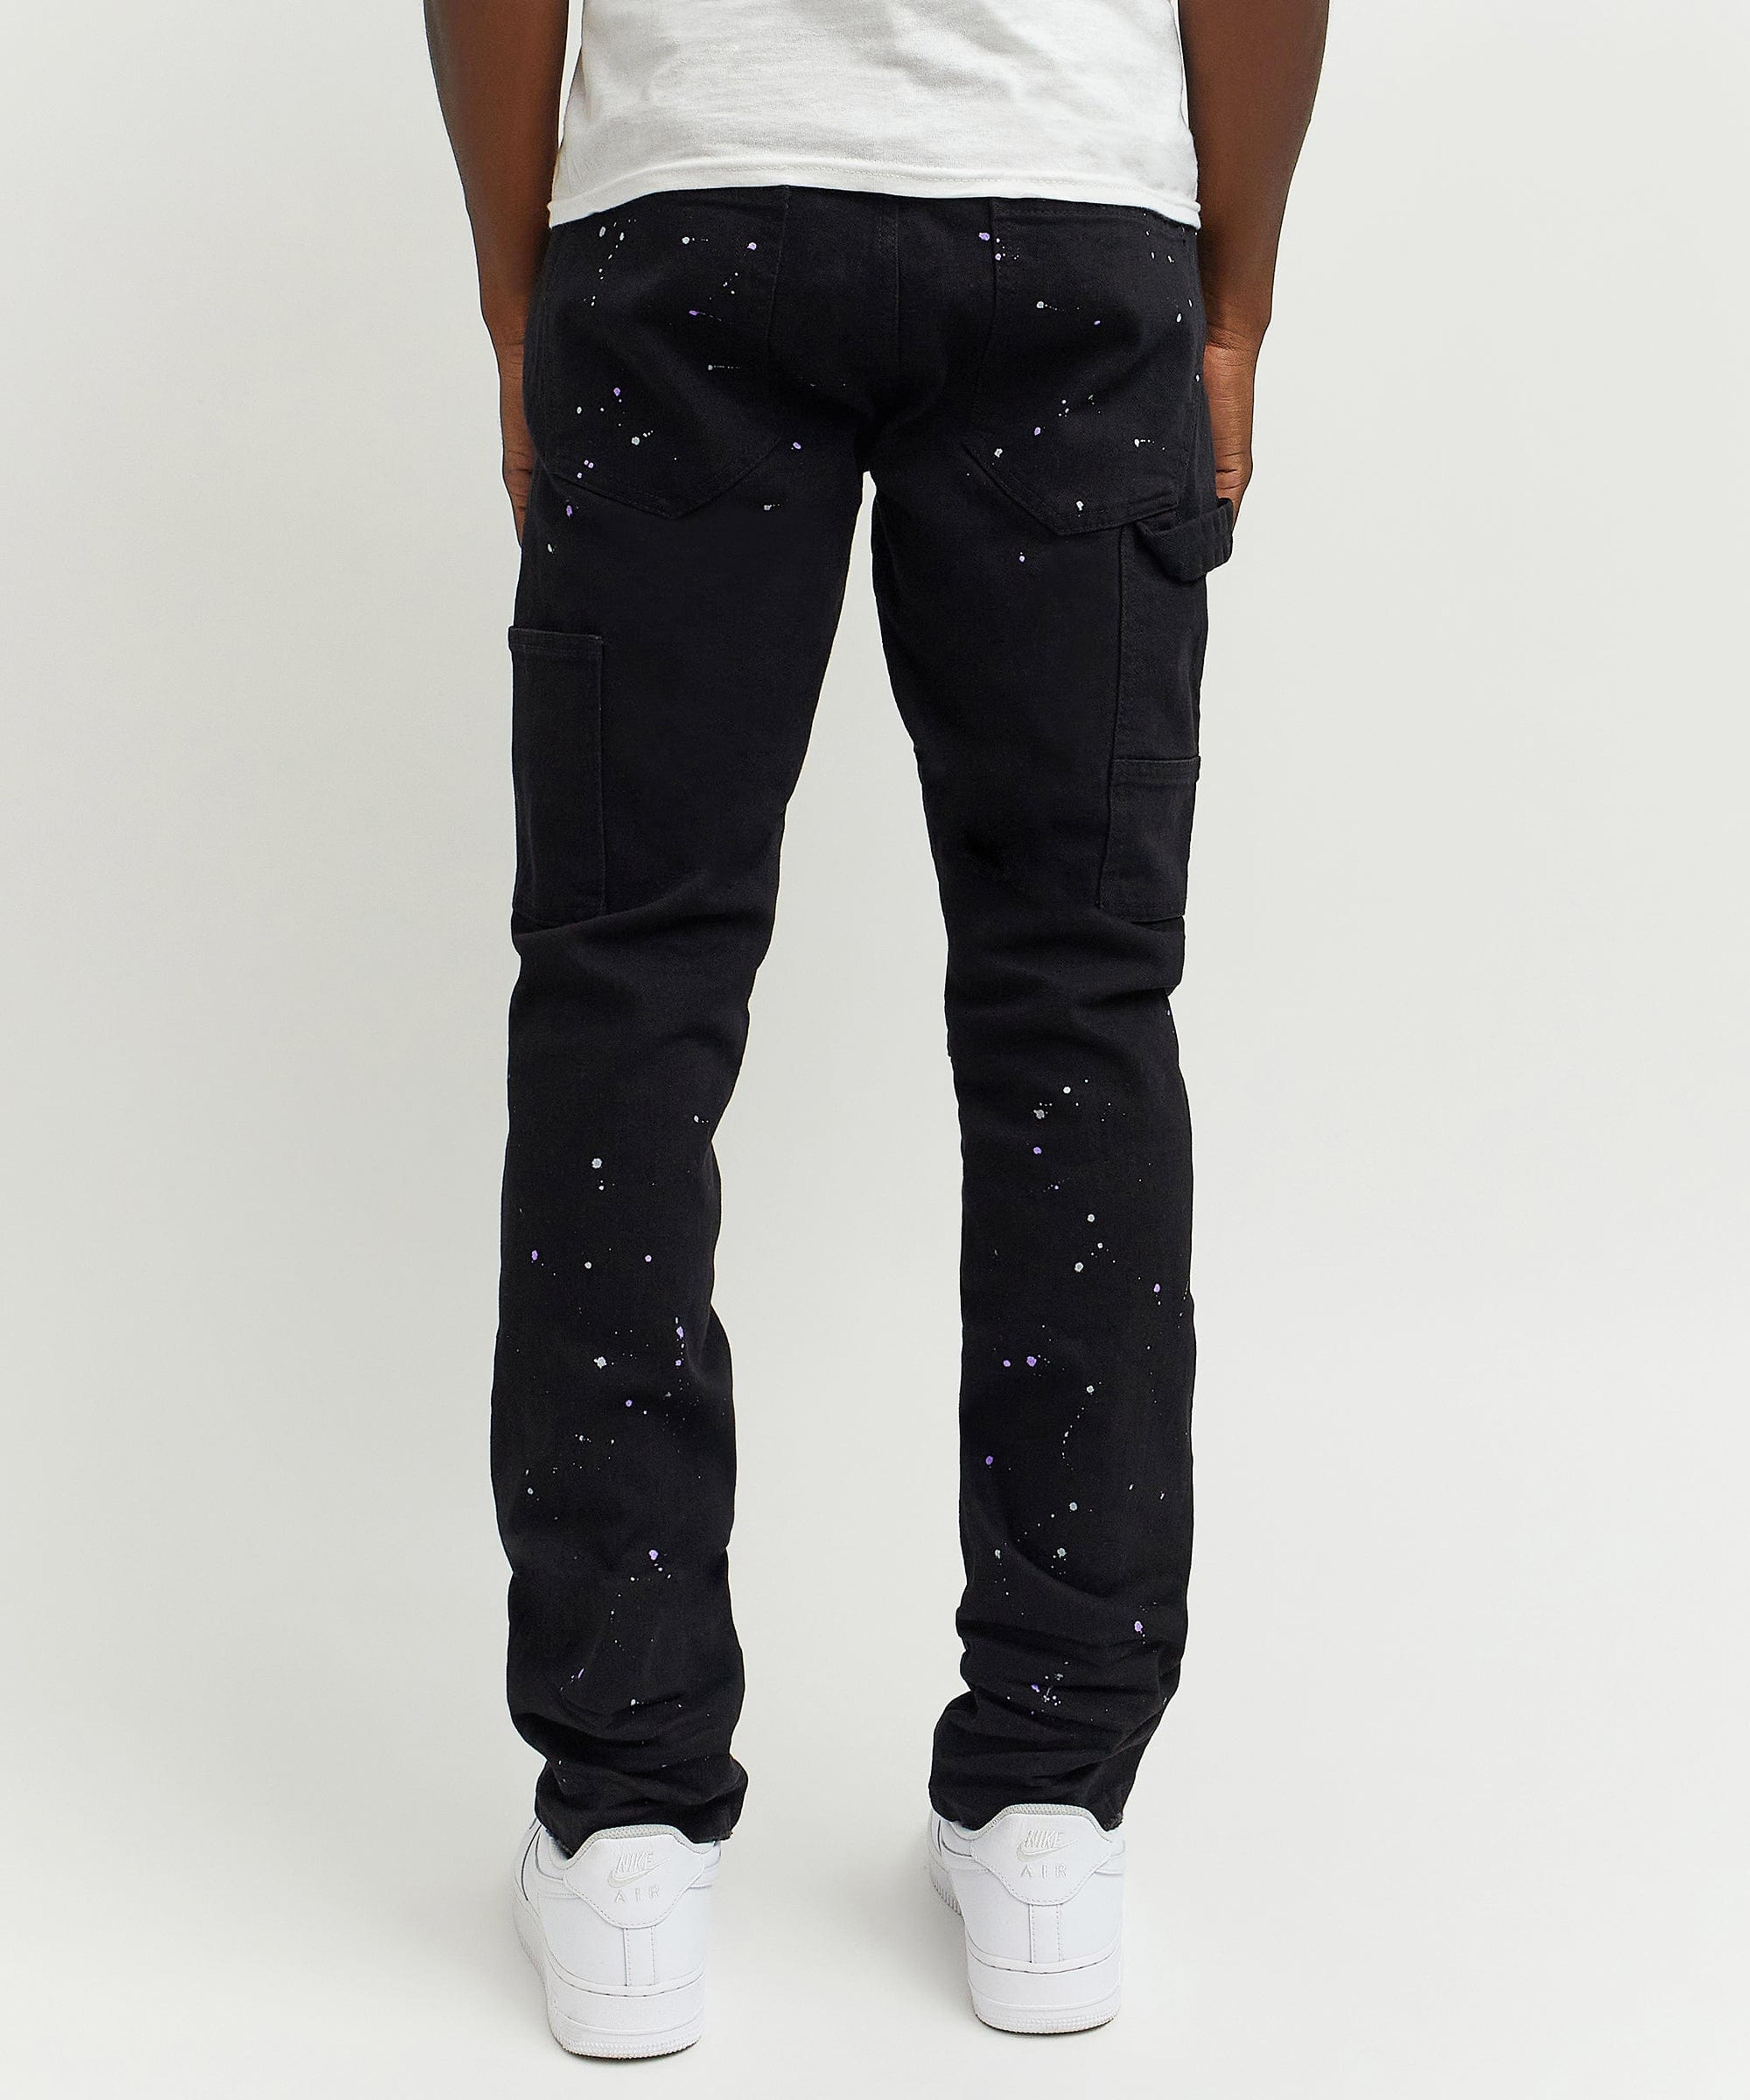 Alternate View 7 of Paint Splatter Denim Jeans - Black